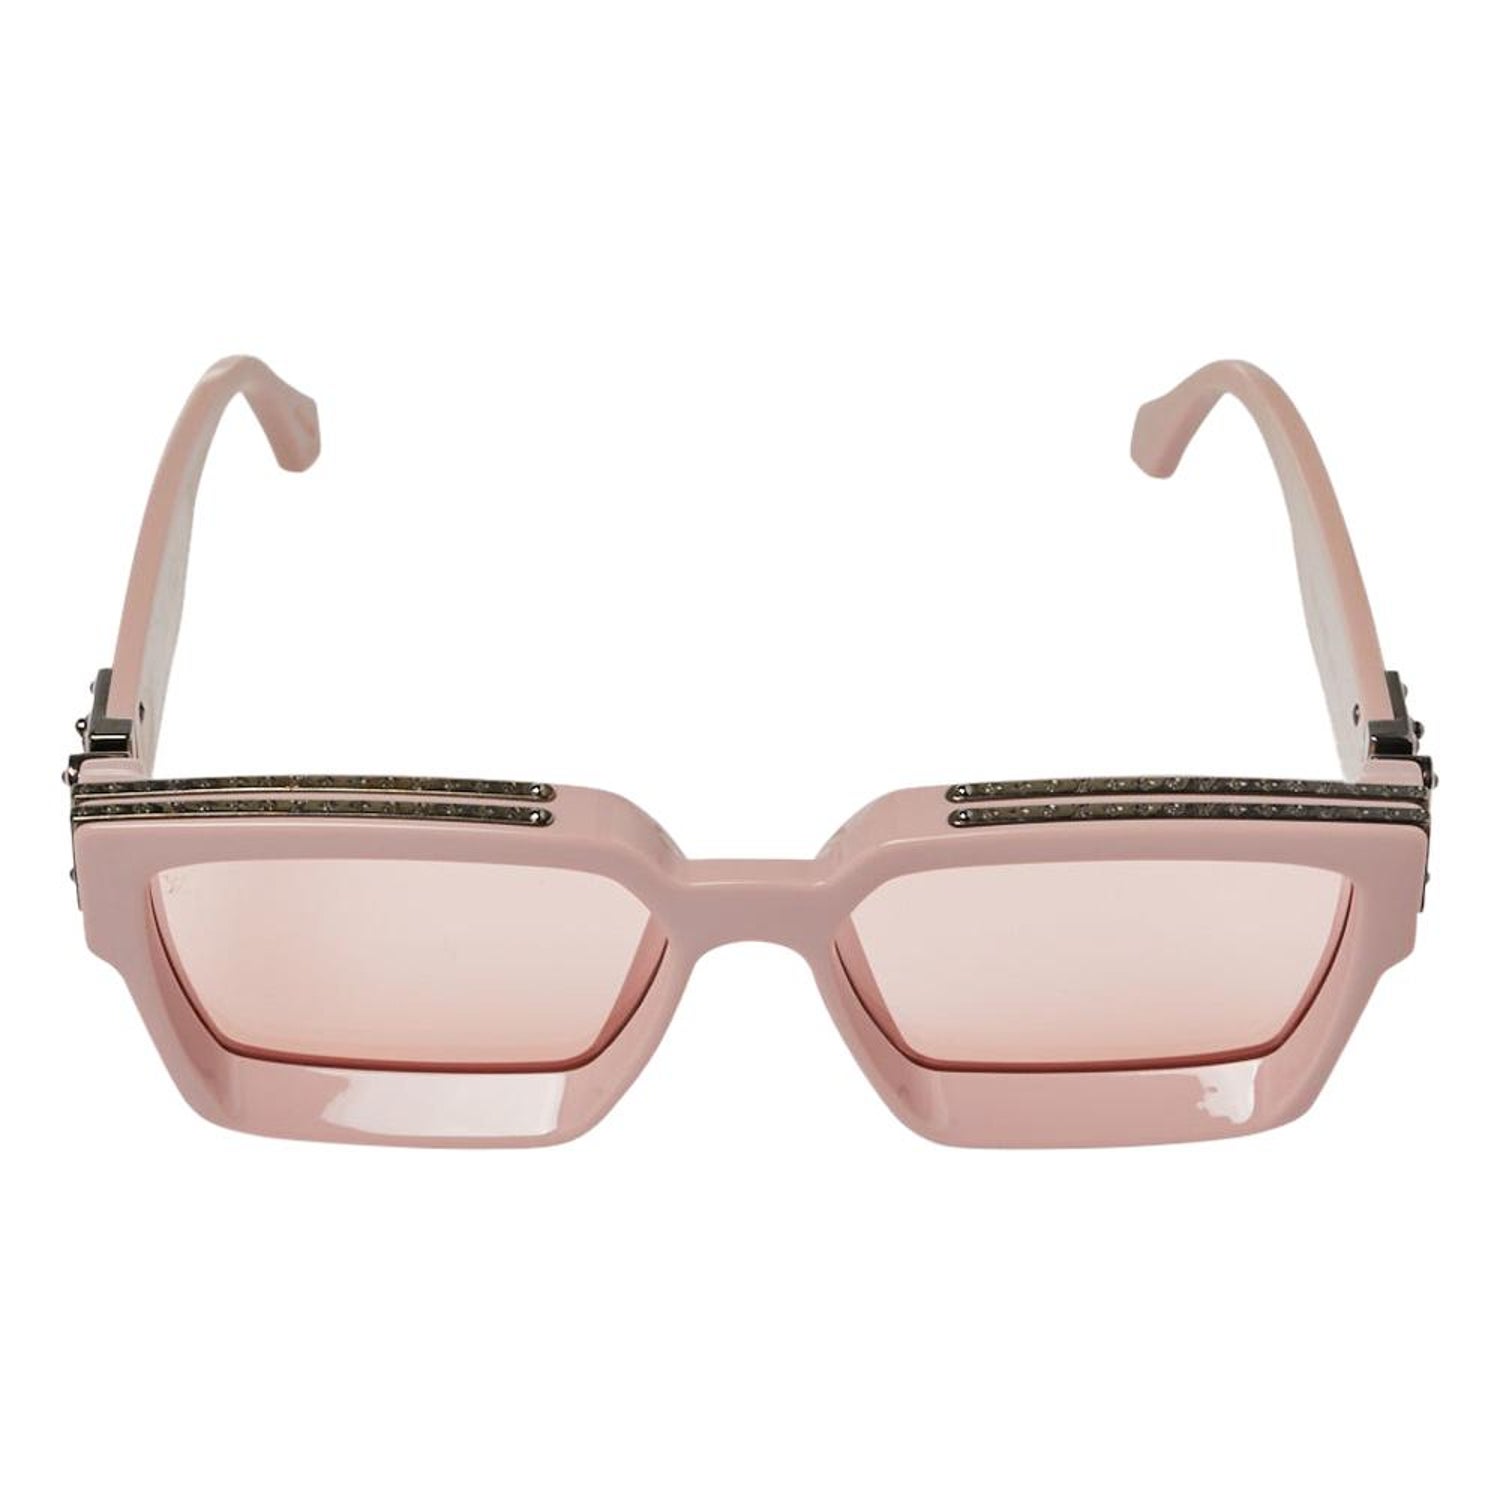 Louis Vuitton Millionaire Sunglasses - 2 For Sale on 1stDibs | lv  millionaire sunglasses, 1.1 millionaires sunglasses, lv millionaire